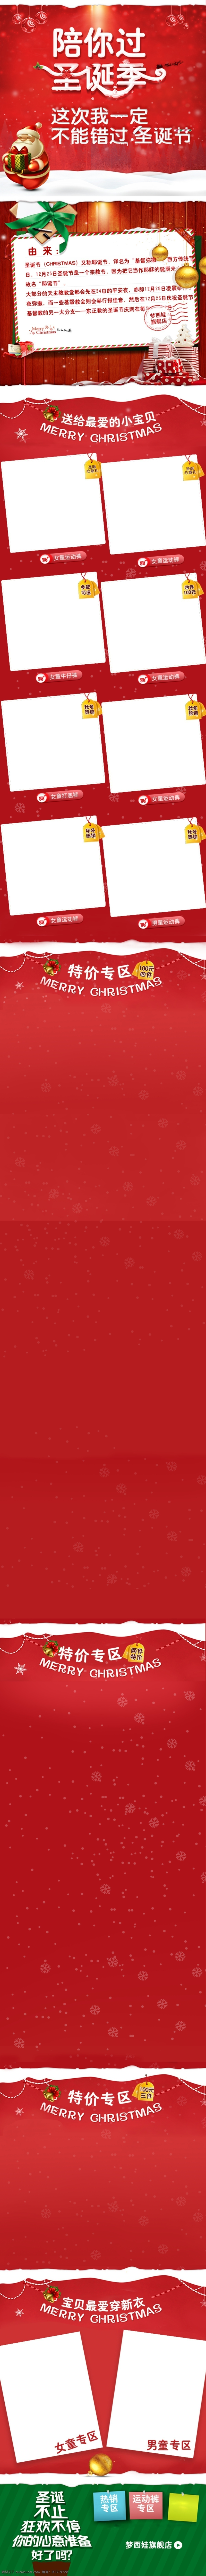 淘宝 圣诞节 狂欢夜 无线 端 首页 天猫 手机 服饰 日用品 模板 圣诞快乐 圣诞元旦同庆 首页模板 天猫手机端 无线端首页 移动端首页